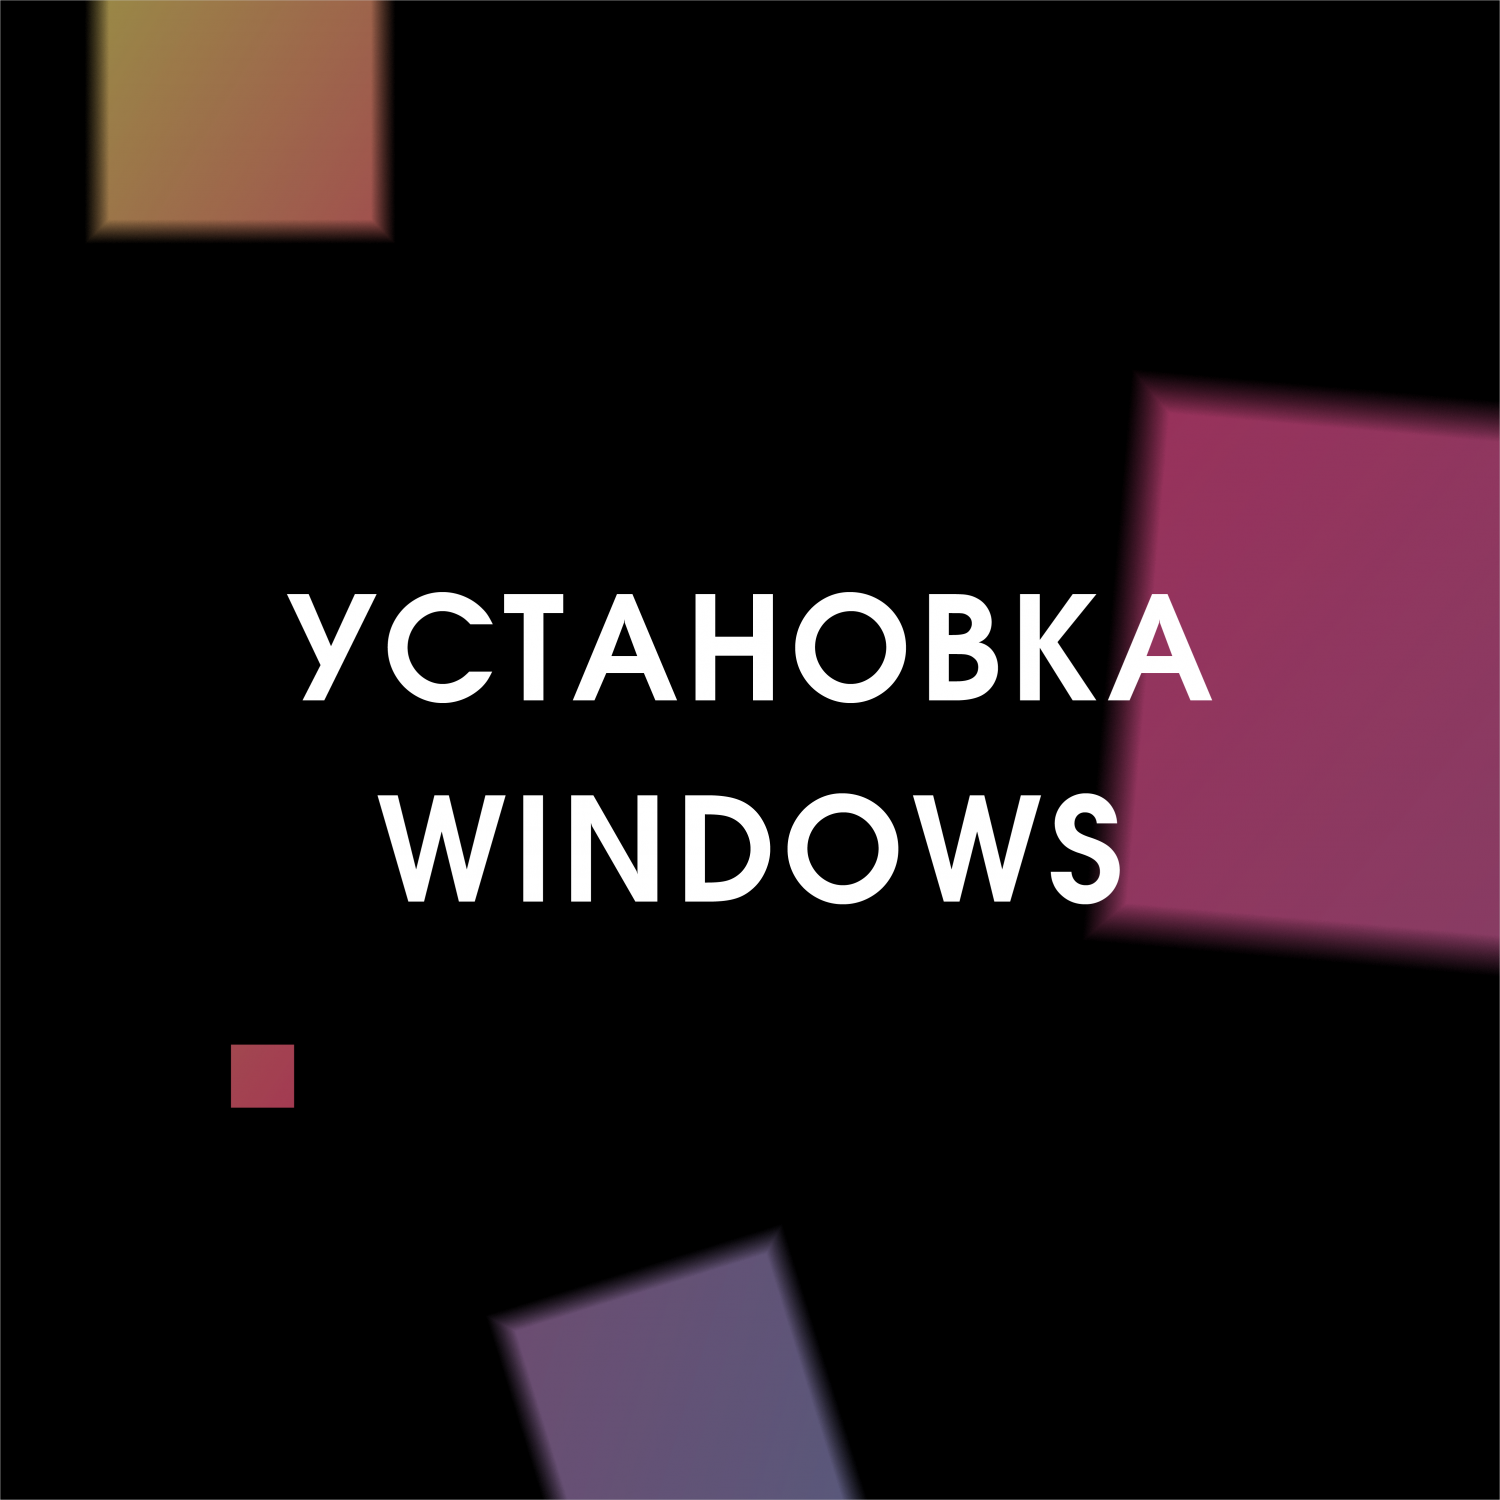 Купить установка windows (windows) Услуги для компьютеров Windows в официальном магазине Apple, Samsung, Xiaomi. iPixel.ru Купить, заказ, кредит, рассрочка, отзывы,  характеристики, цена,  фотографии, в подарок.